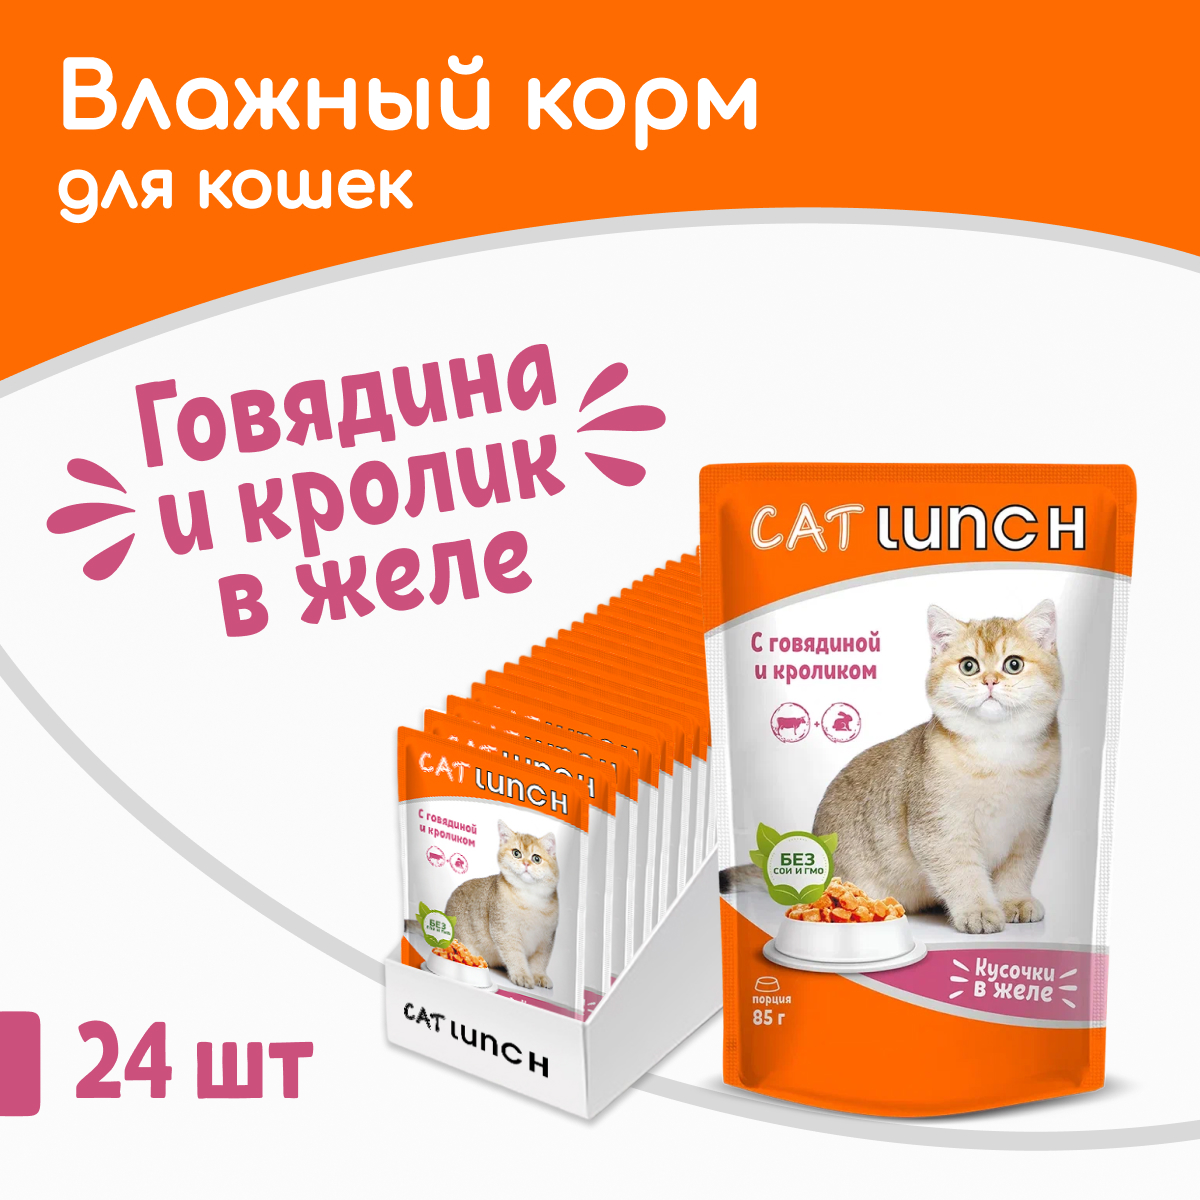 Влажный корм для кошек Cat Lunch говядина и кролик, 24шт по 85г